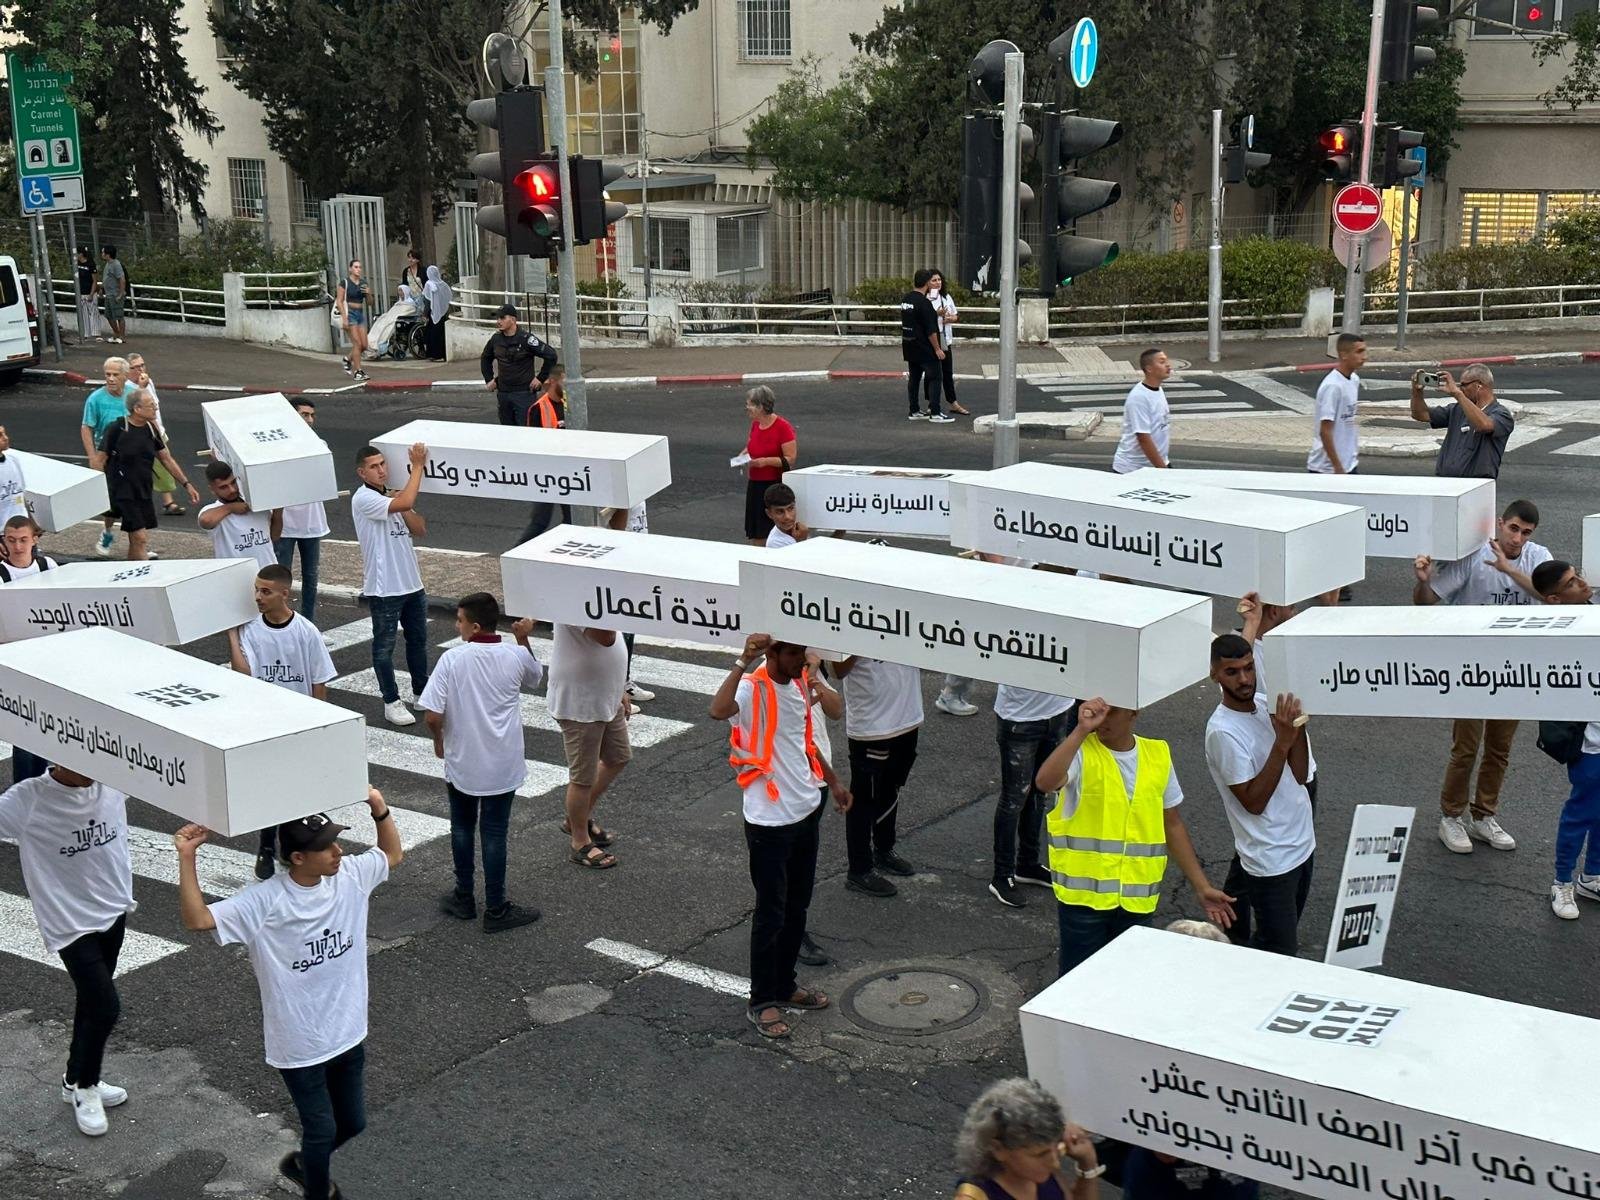 حيفا: اختتام "مسيرة الأموات"- حضور مهيب رافض للعنف والجريمة!-52